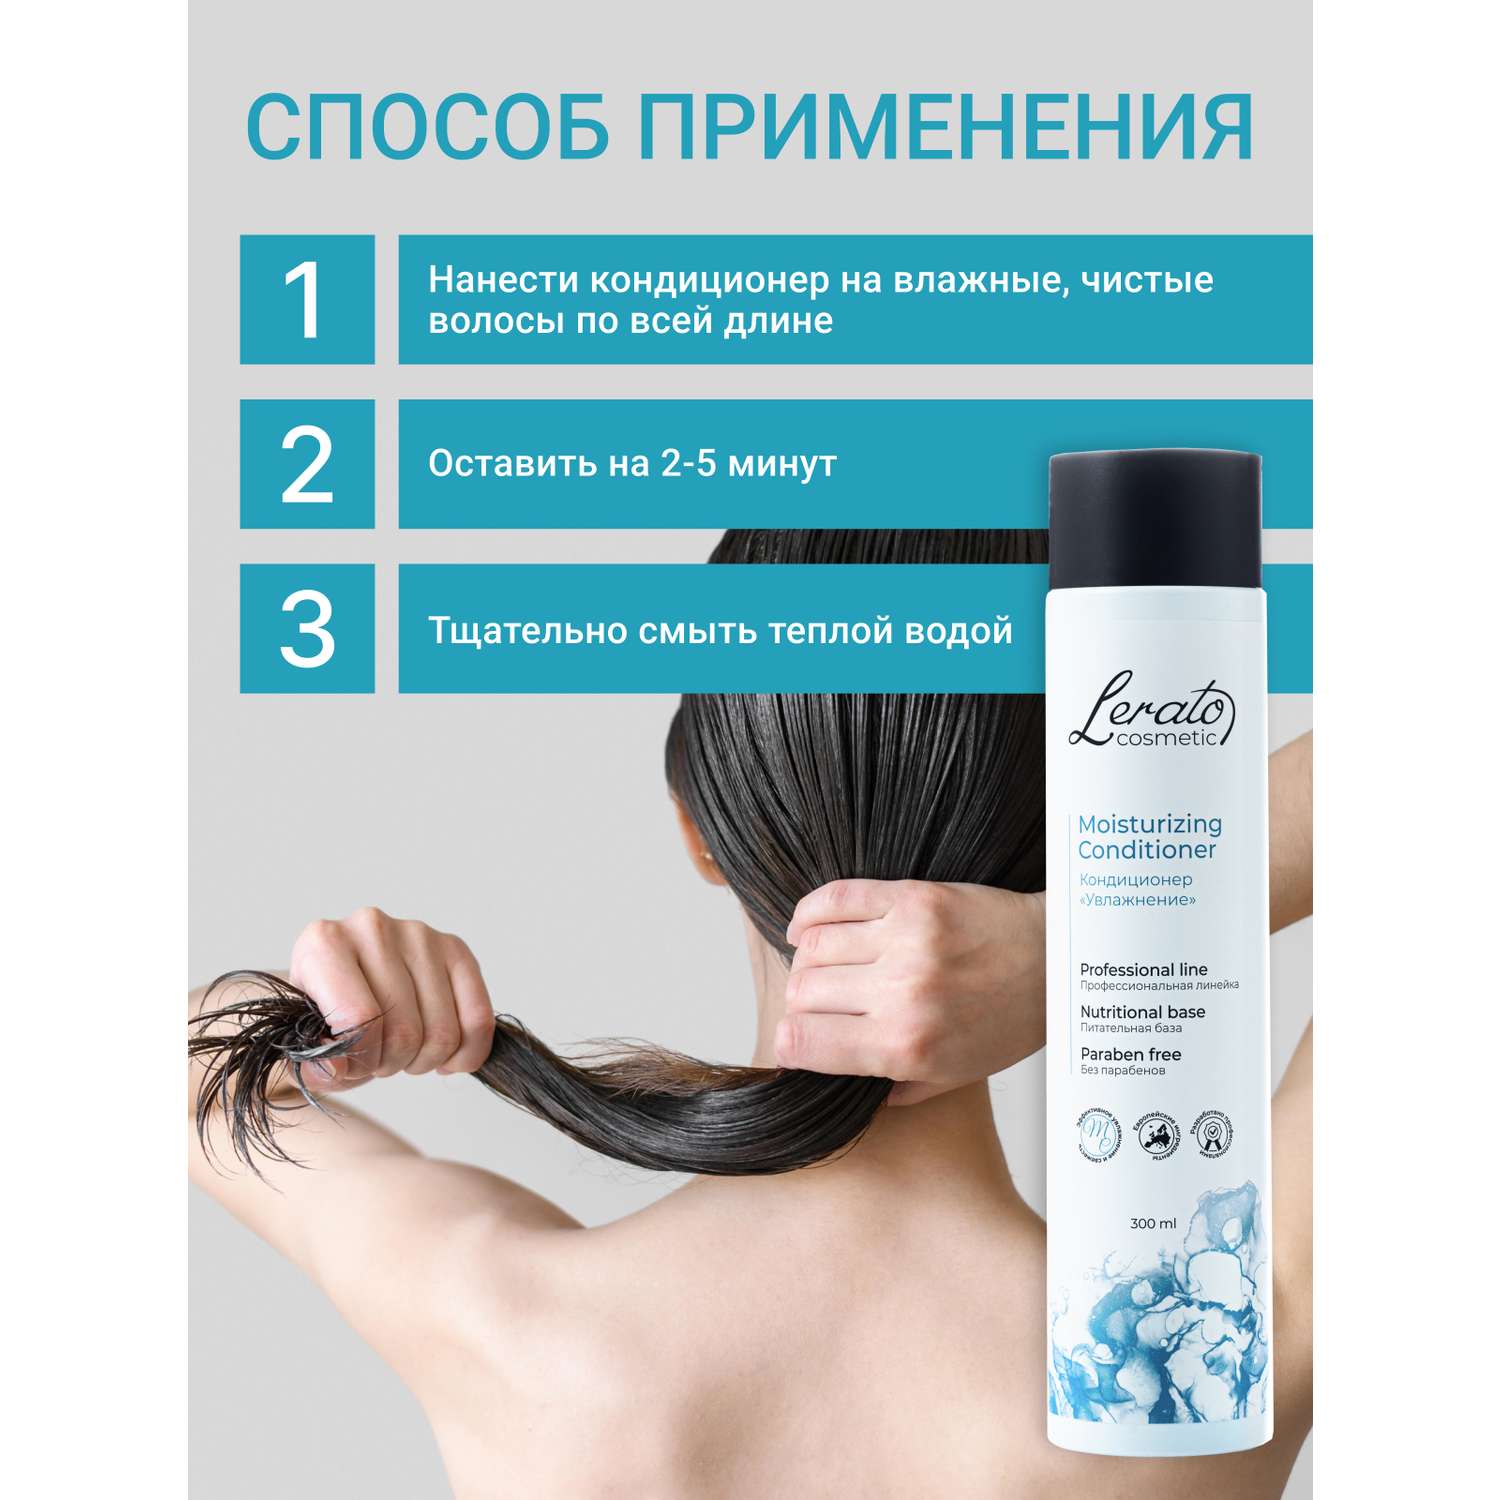 Кондиционер Lerato Cosmetic для увлажнения и продления свежести волос 300 мл - фото 5